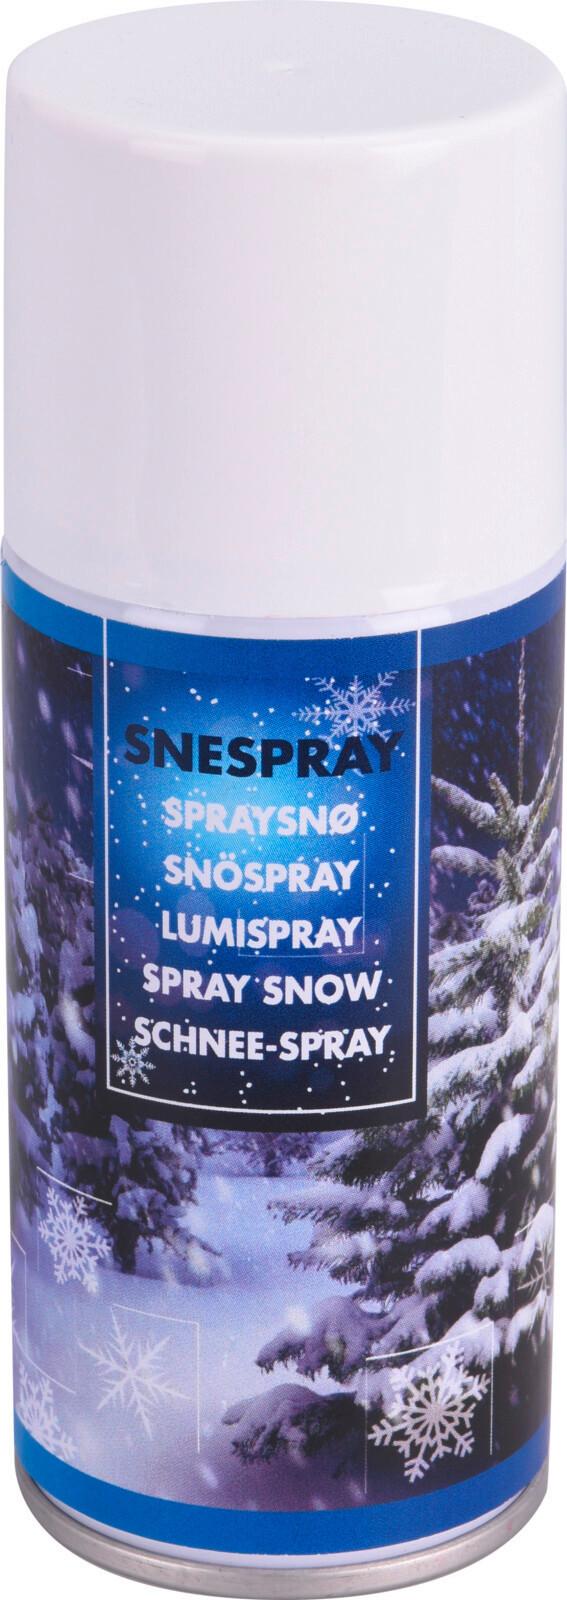 Kunstschnee Spray 150 ml - Weiß, KONVENTIONELL, Kunststoff (4,5/18cm)